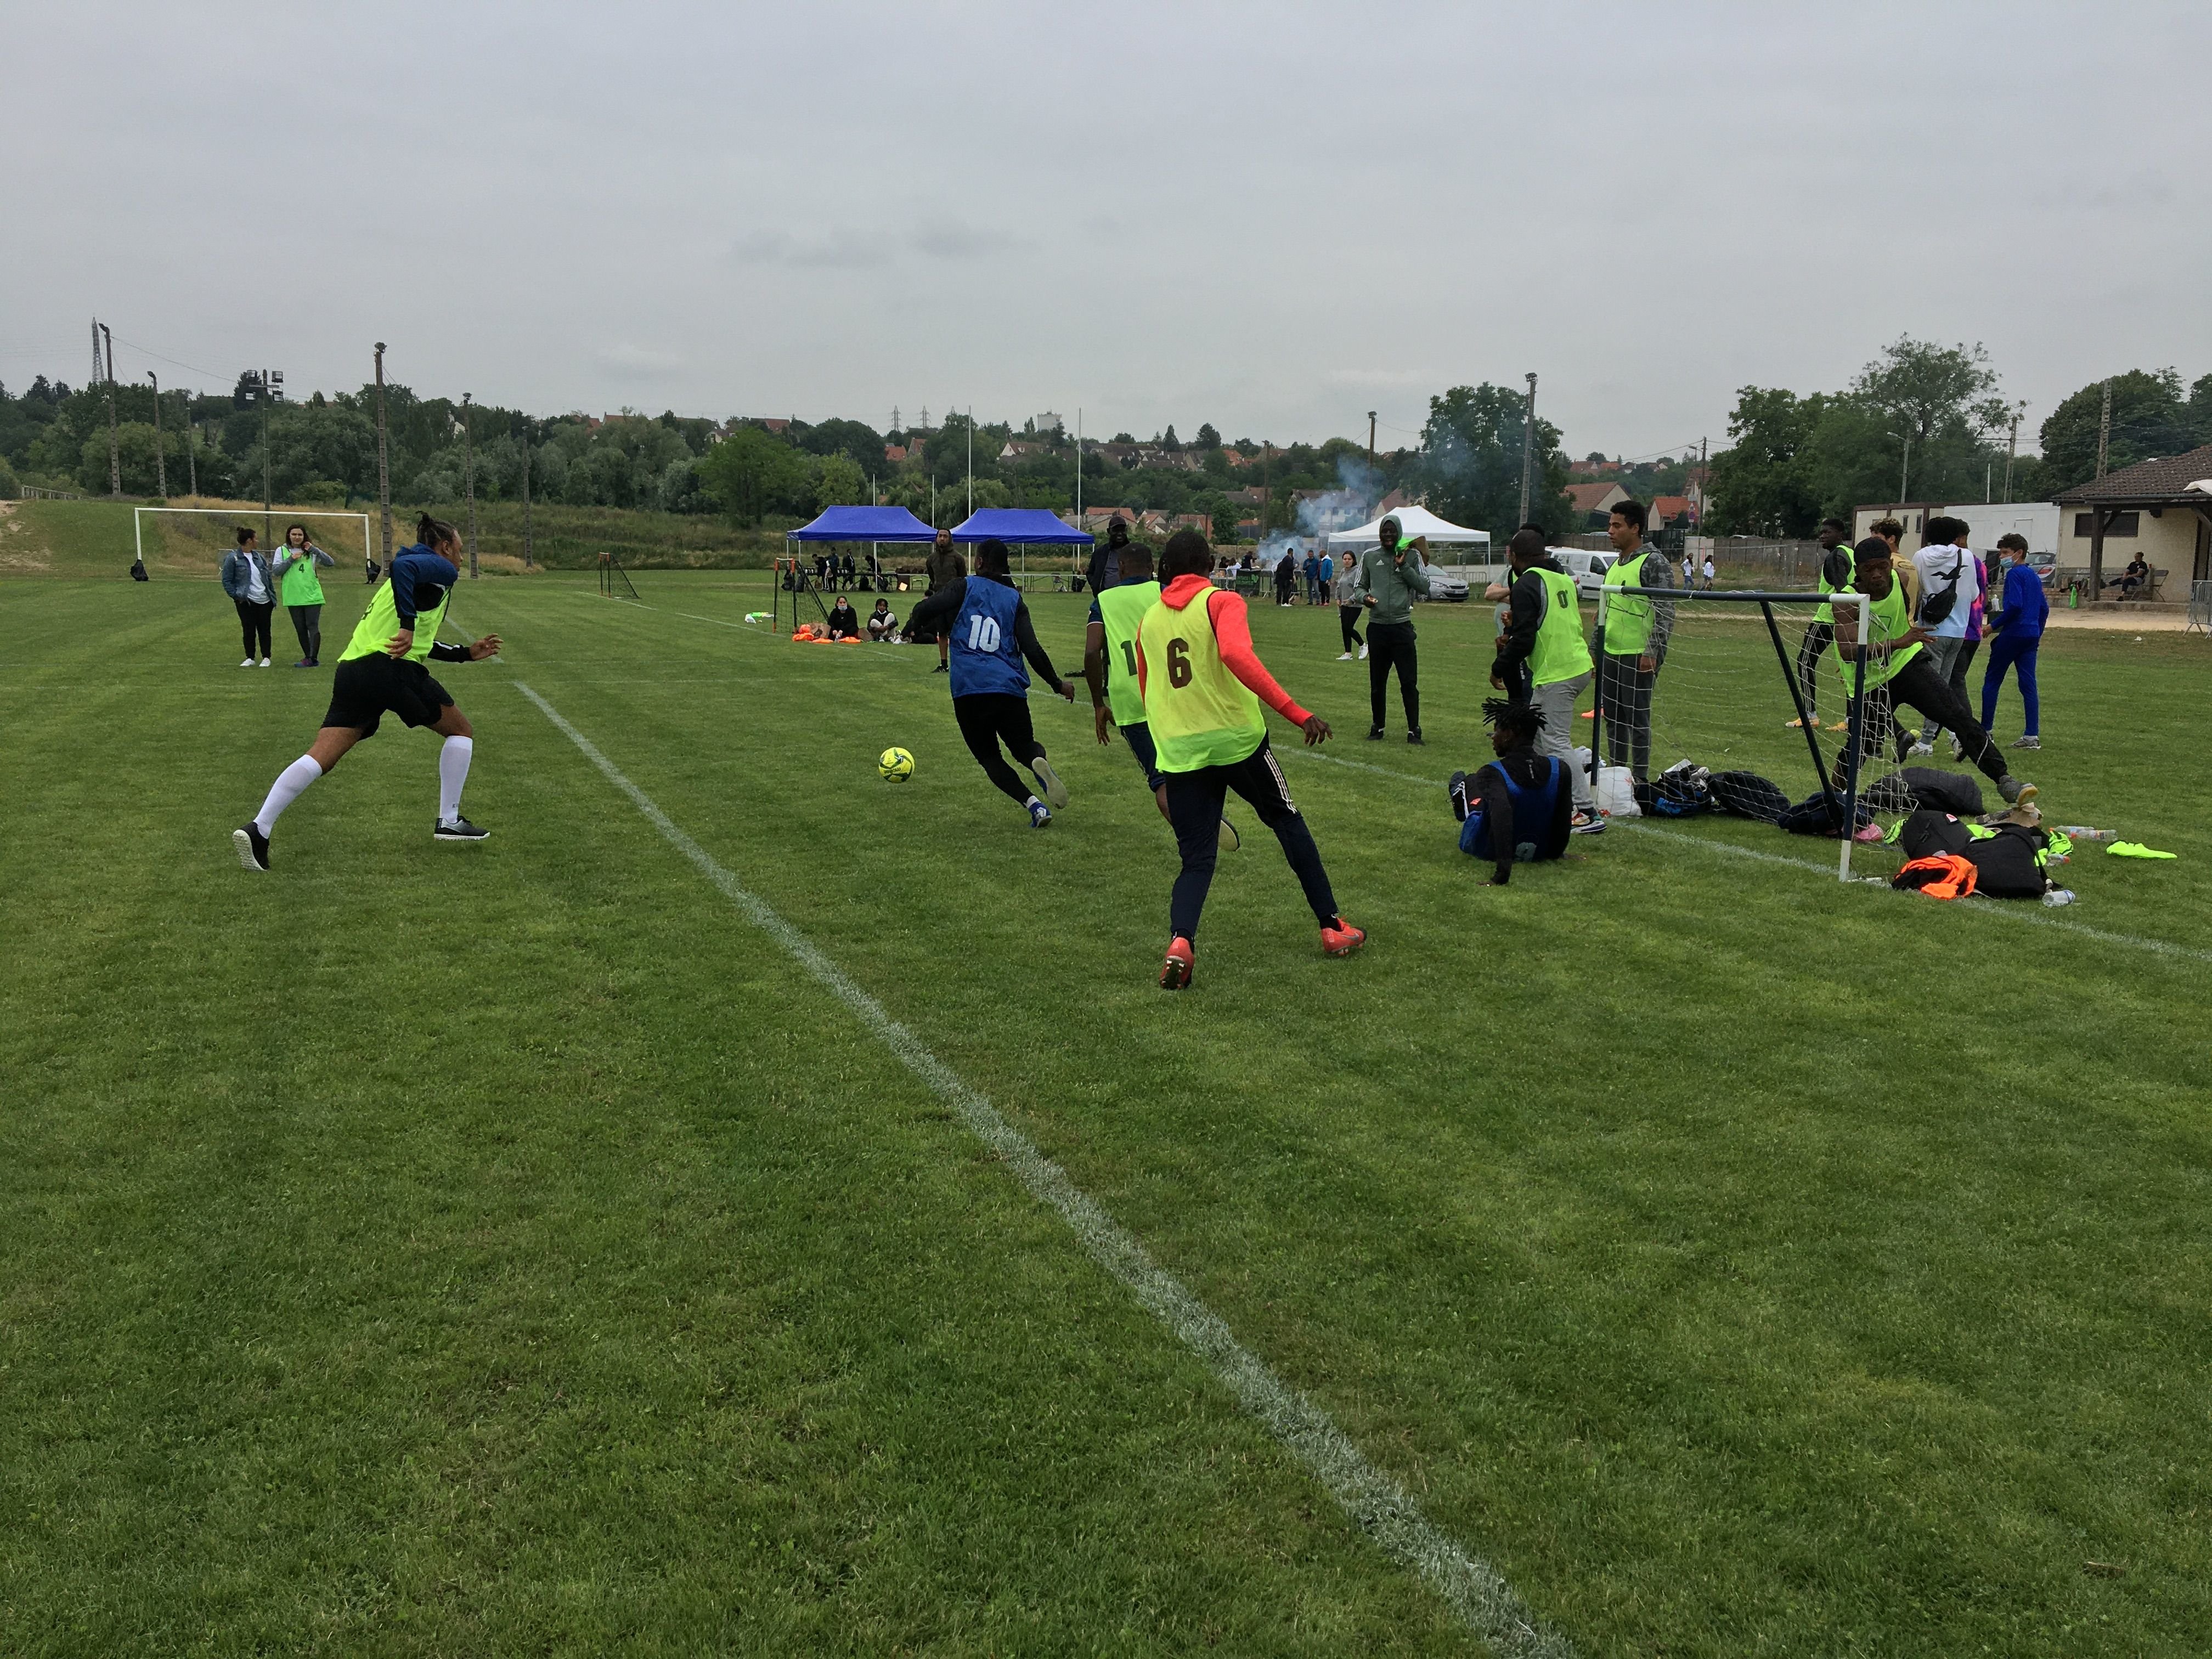 Corbeil-Essonnes, ce jeudi 24 juin 2021. Près de 150 jeunes ont participé à un tournoi de foot destiné à les repérer auprès de recruteurs en entreprise. LP/Bartholomé Simon